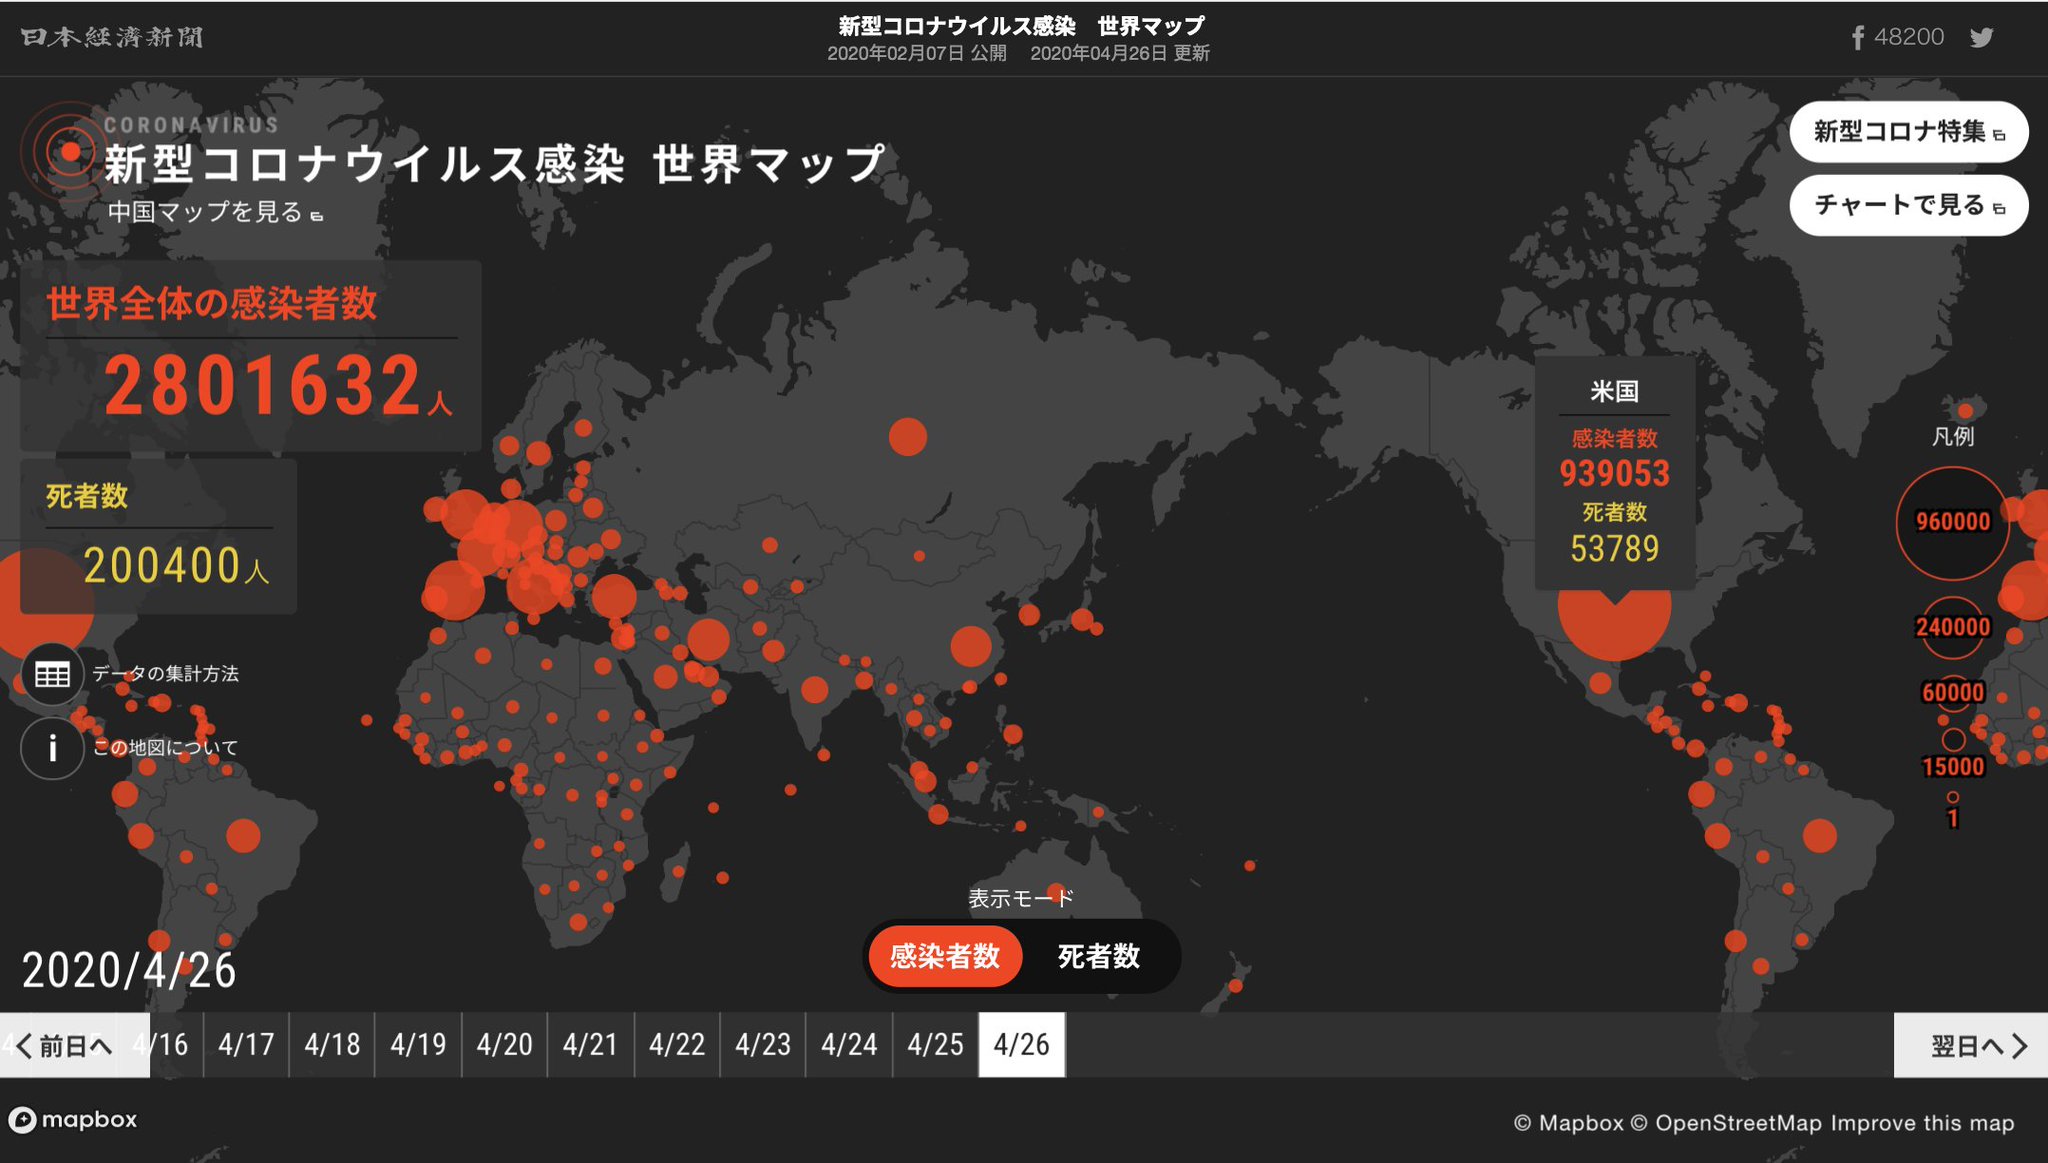 マップ 感染 世界 新型 コロナ 累計感染者は1億8838万人 :